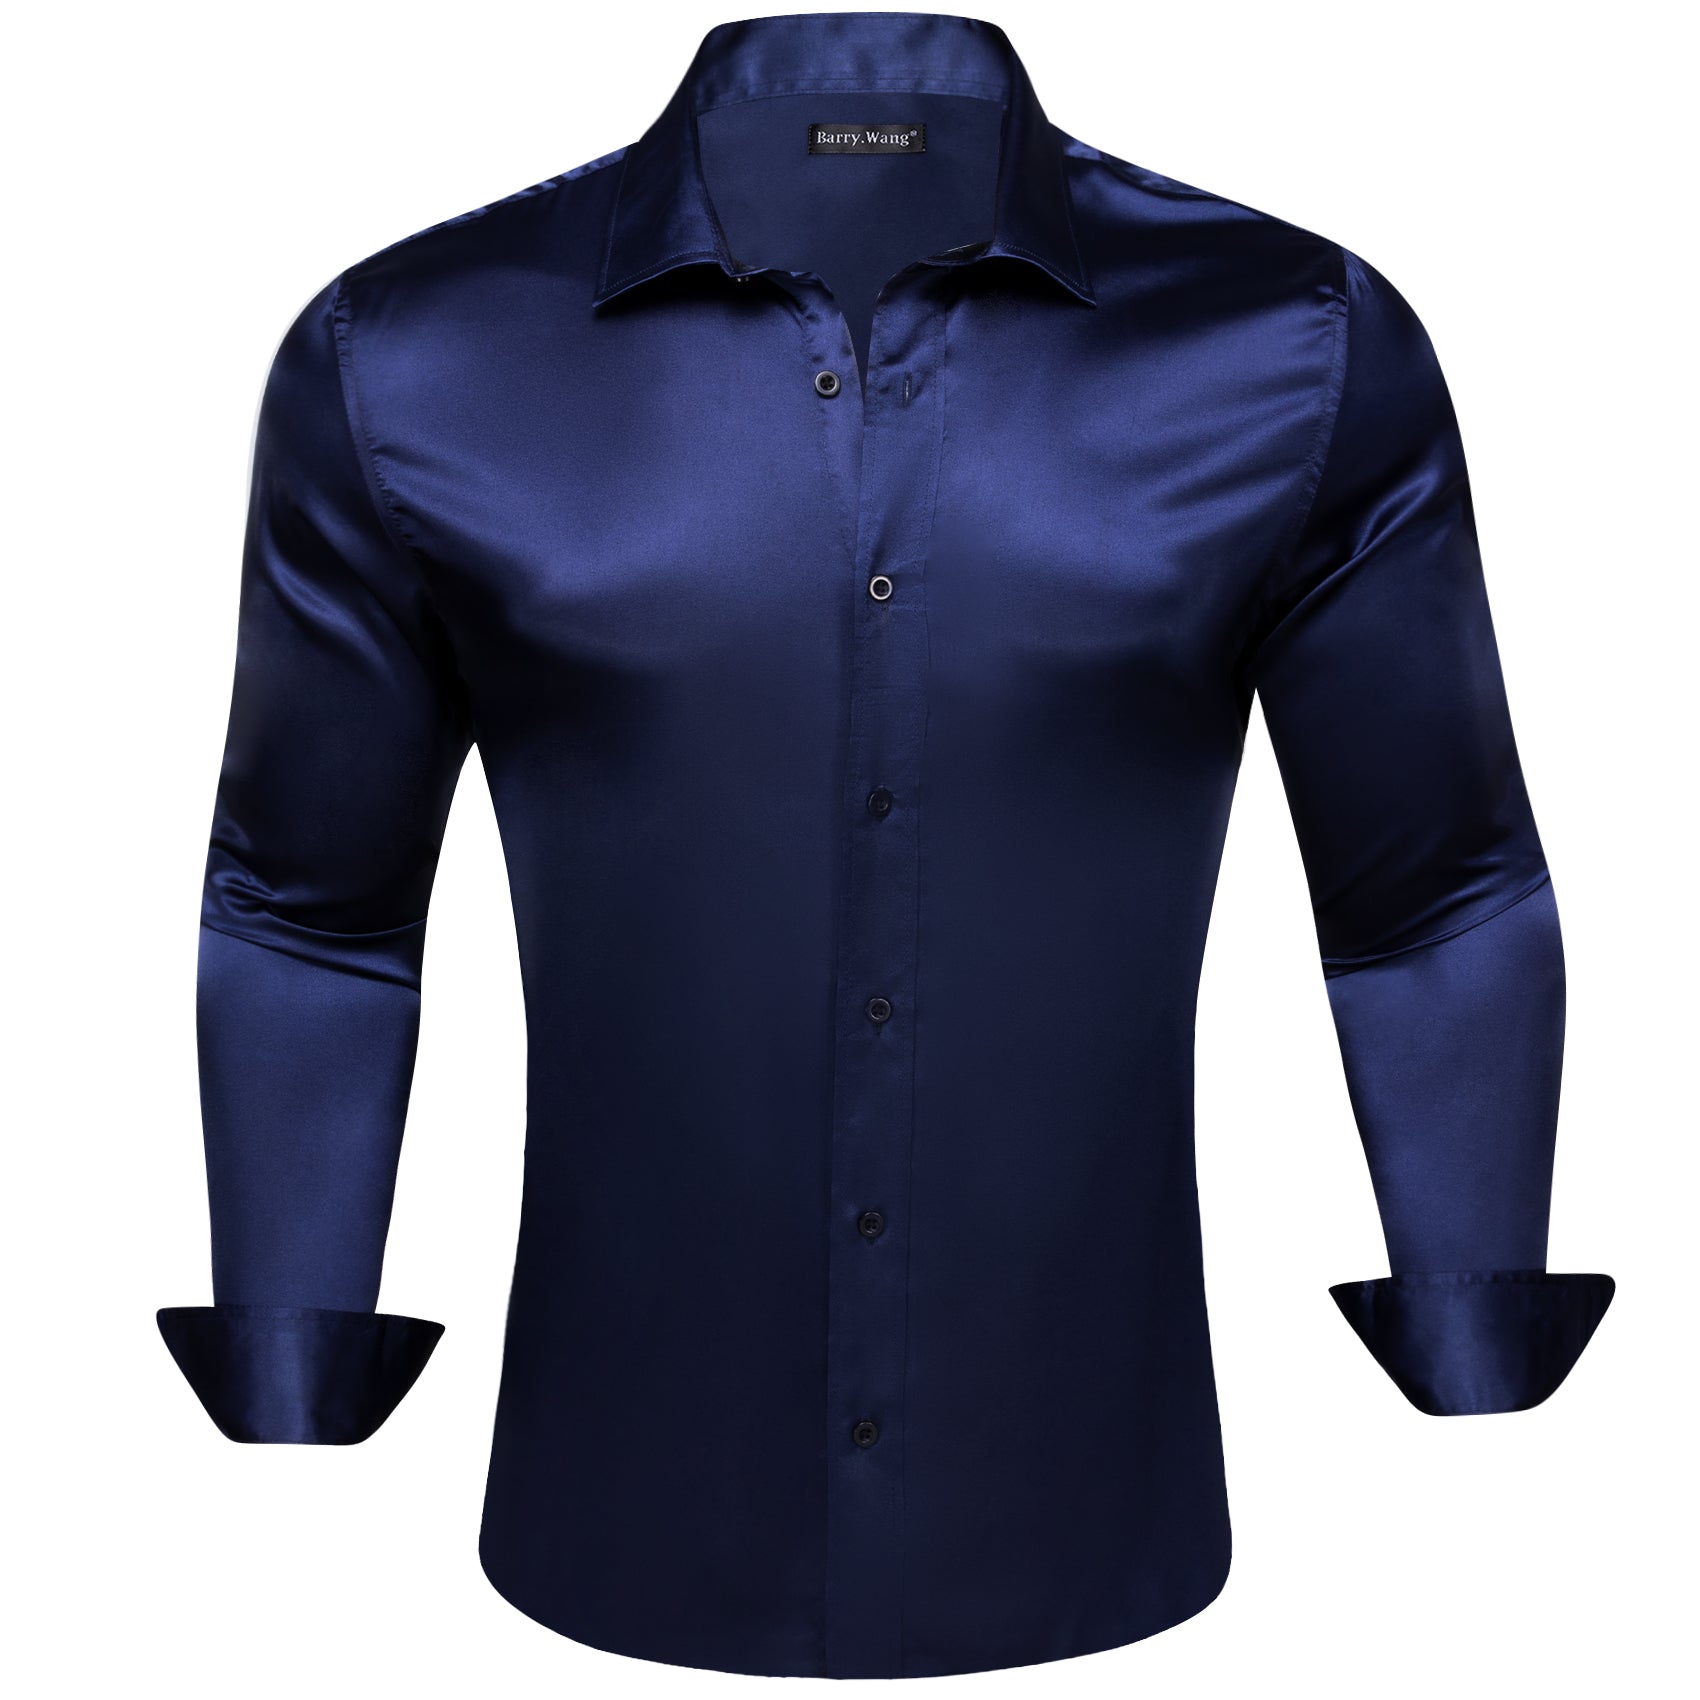 Barry.wang Salvia Blue Solid Silk Shirt